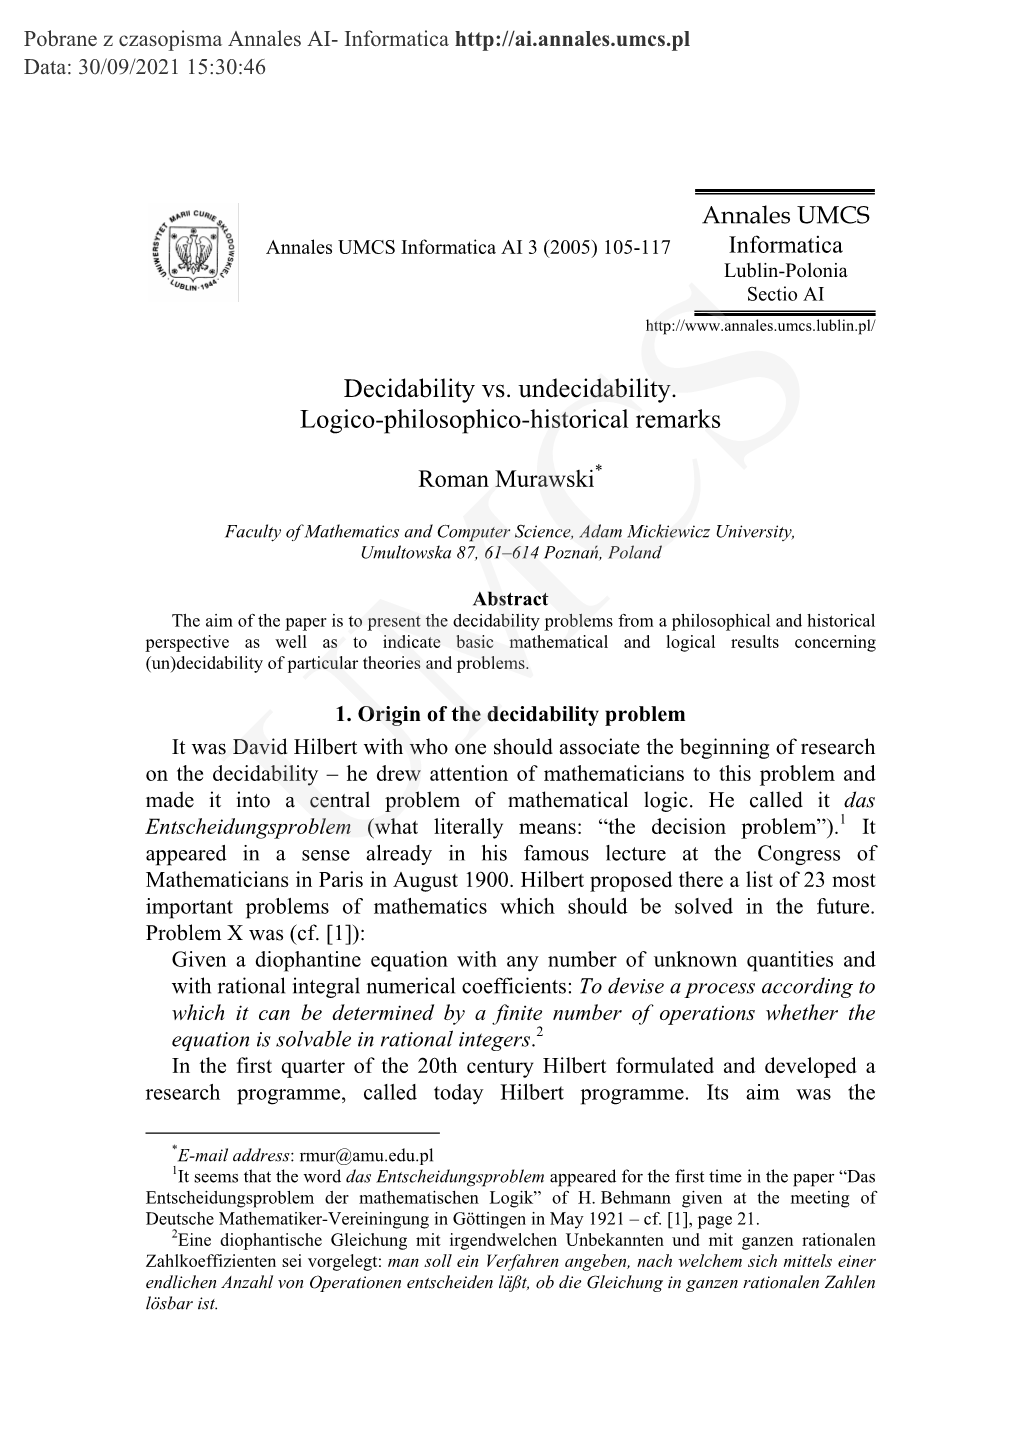 decidability-vs-undecidability-logico-philosophico-historical-remarks